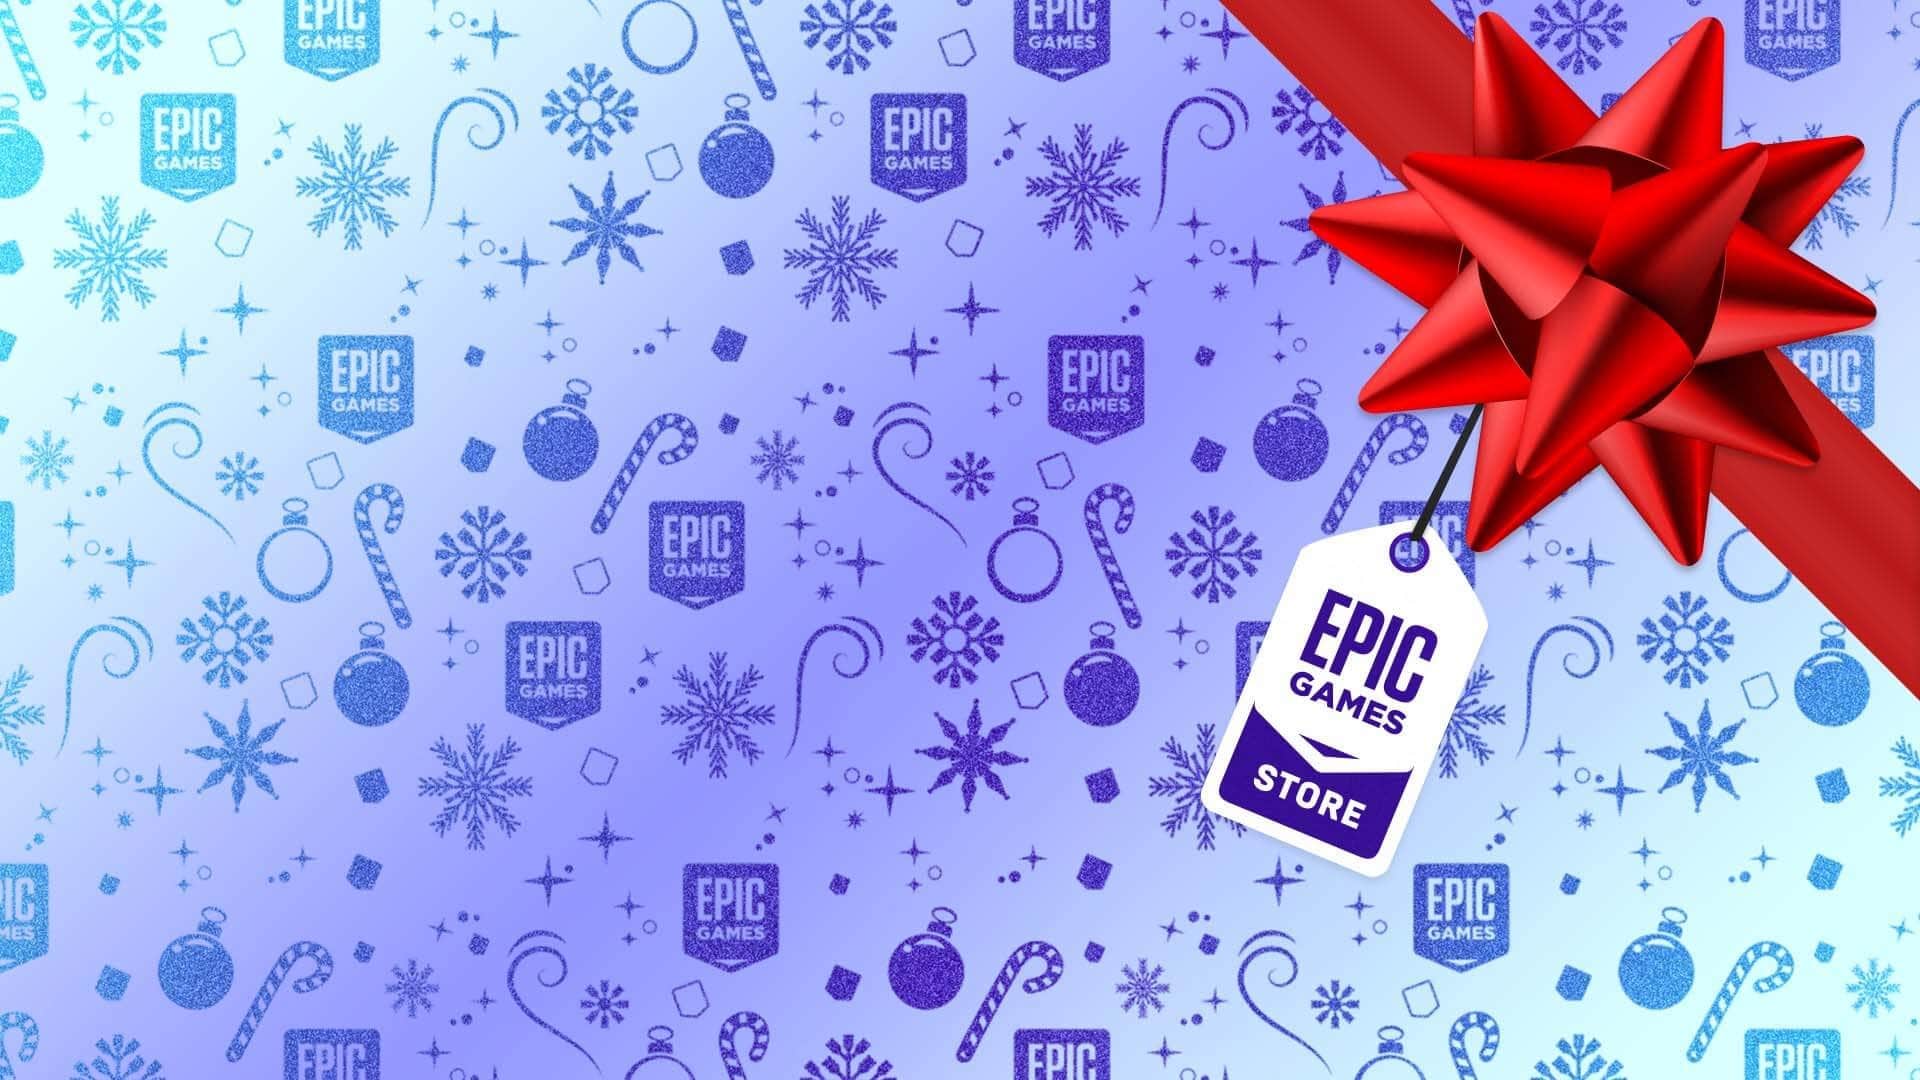 Promoção de fim de ano da Epic Games tem cupom de 33% de desconto e 17 jogos  grátis para PC